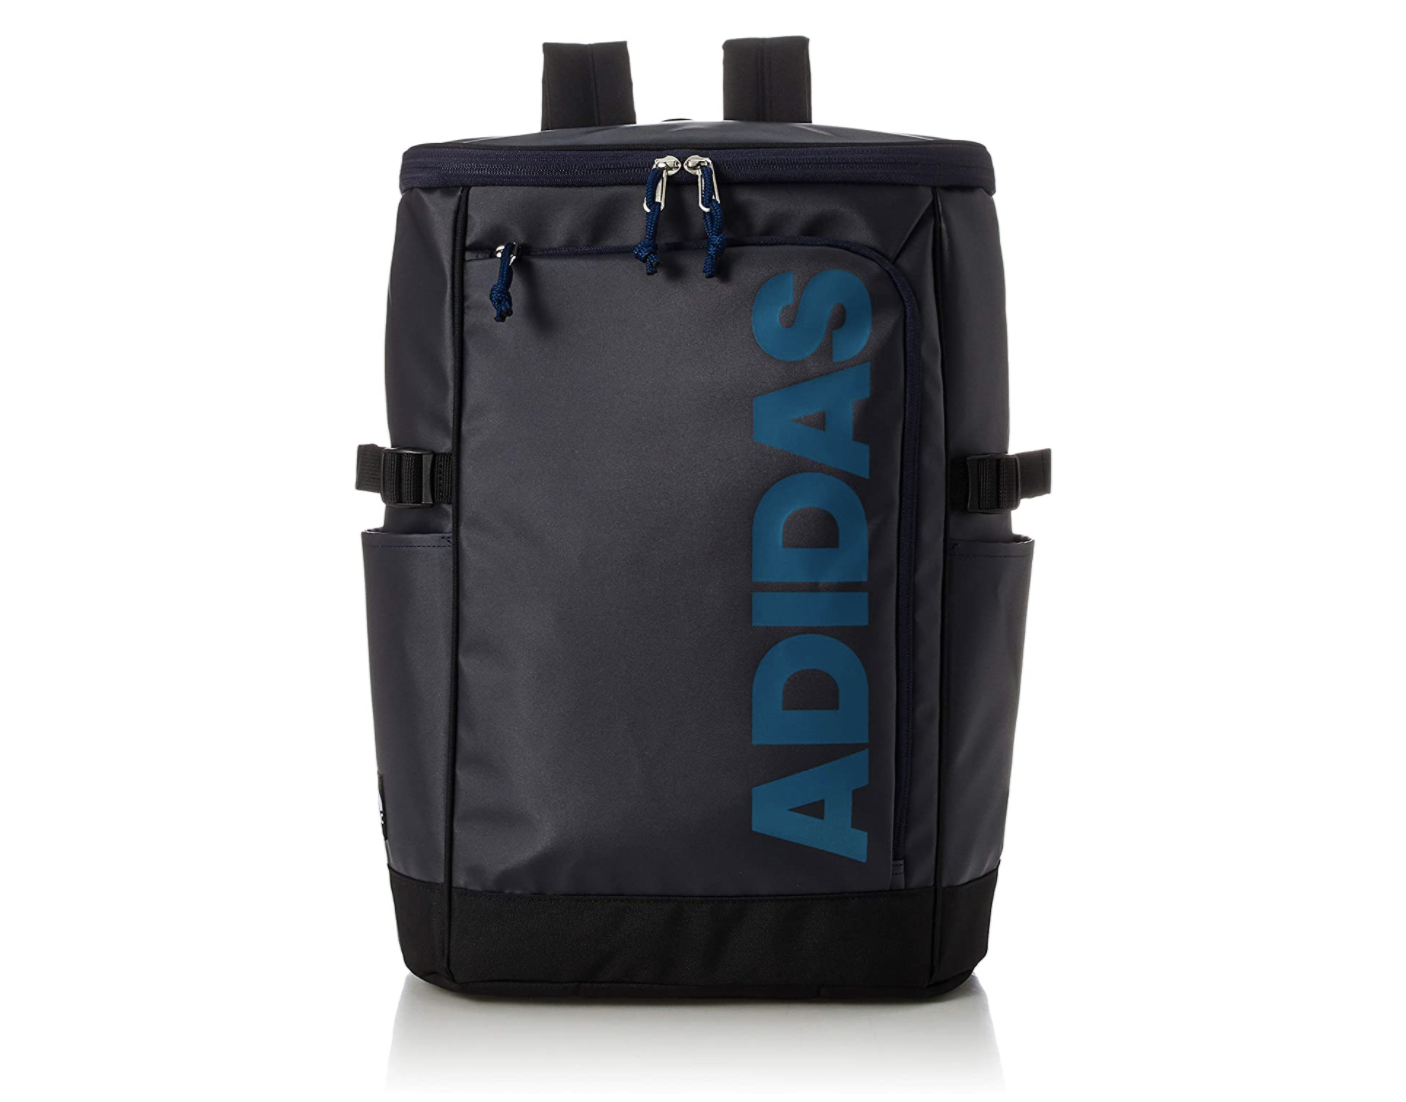 Amazonで アディダスの尖ったデザインのバッグがお買い得 Engadget 日本版